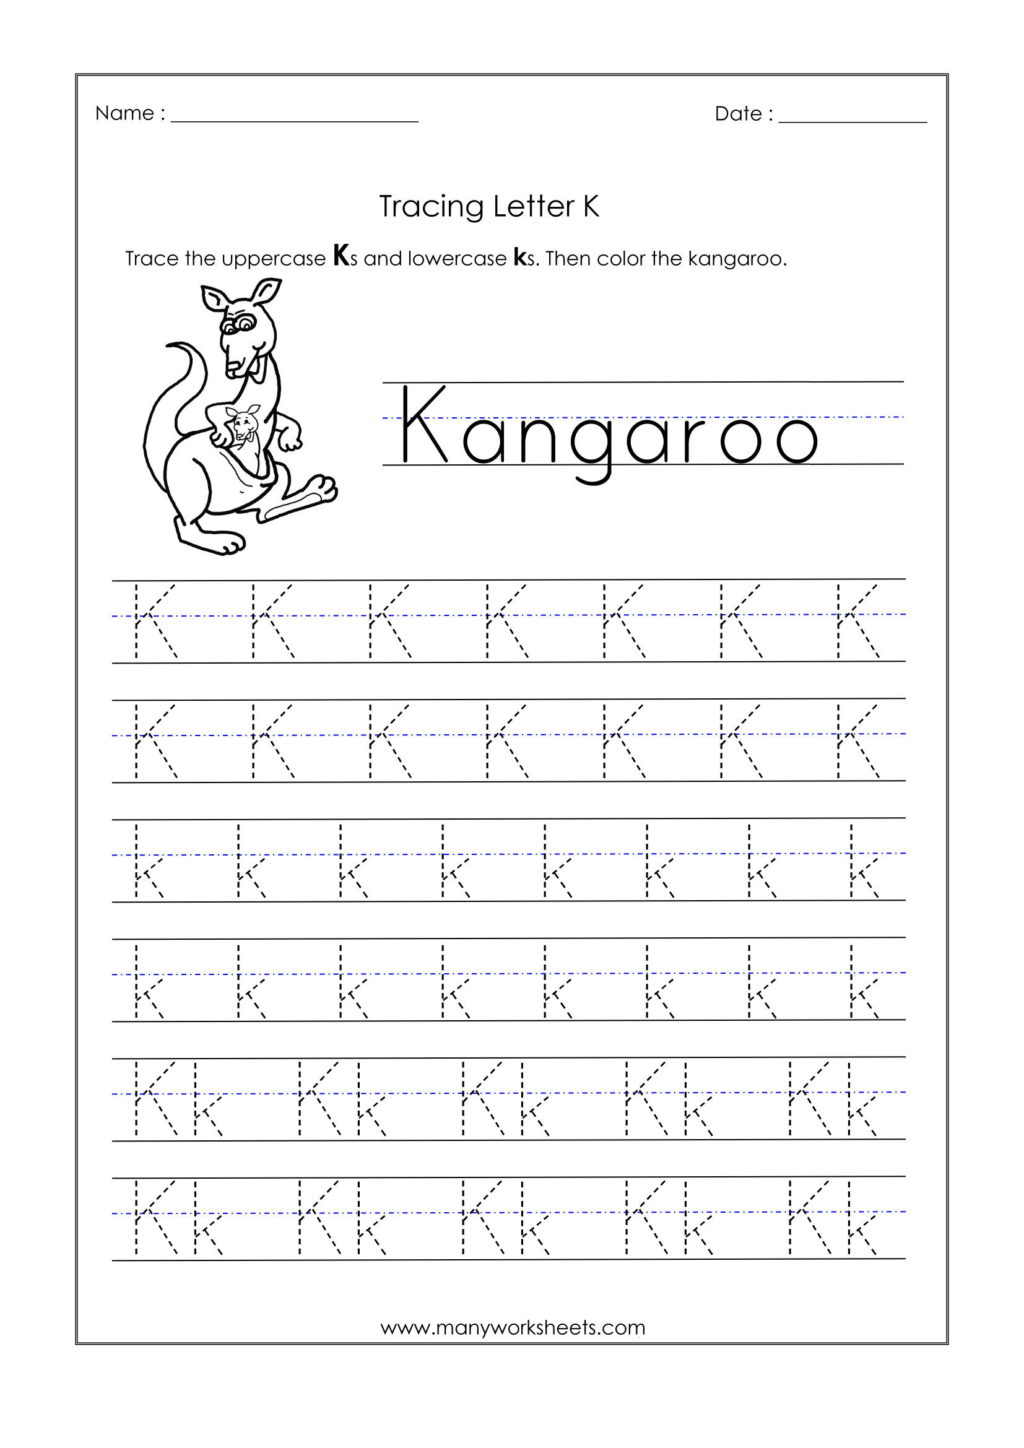 Worksheet ~ Worksheet Letter K Tracing Worksheets For with regard to Letter K Tracing Sheet